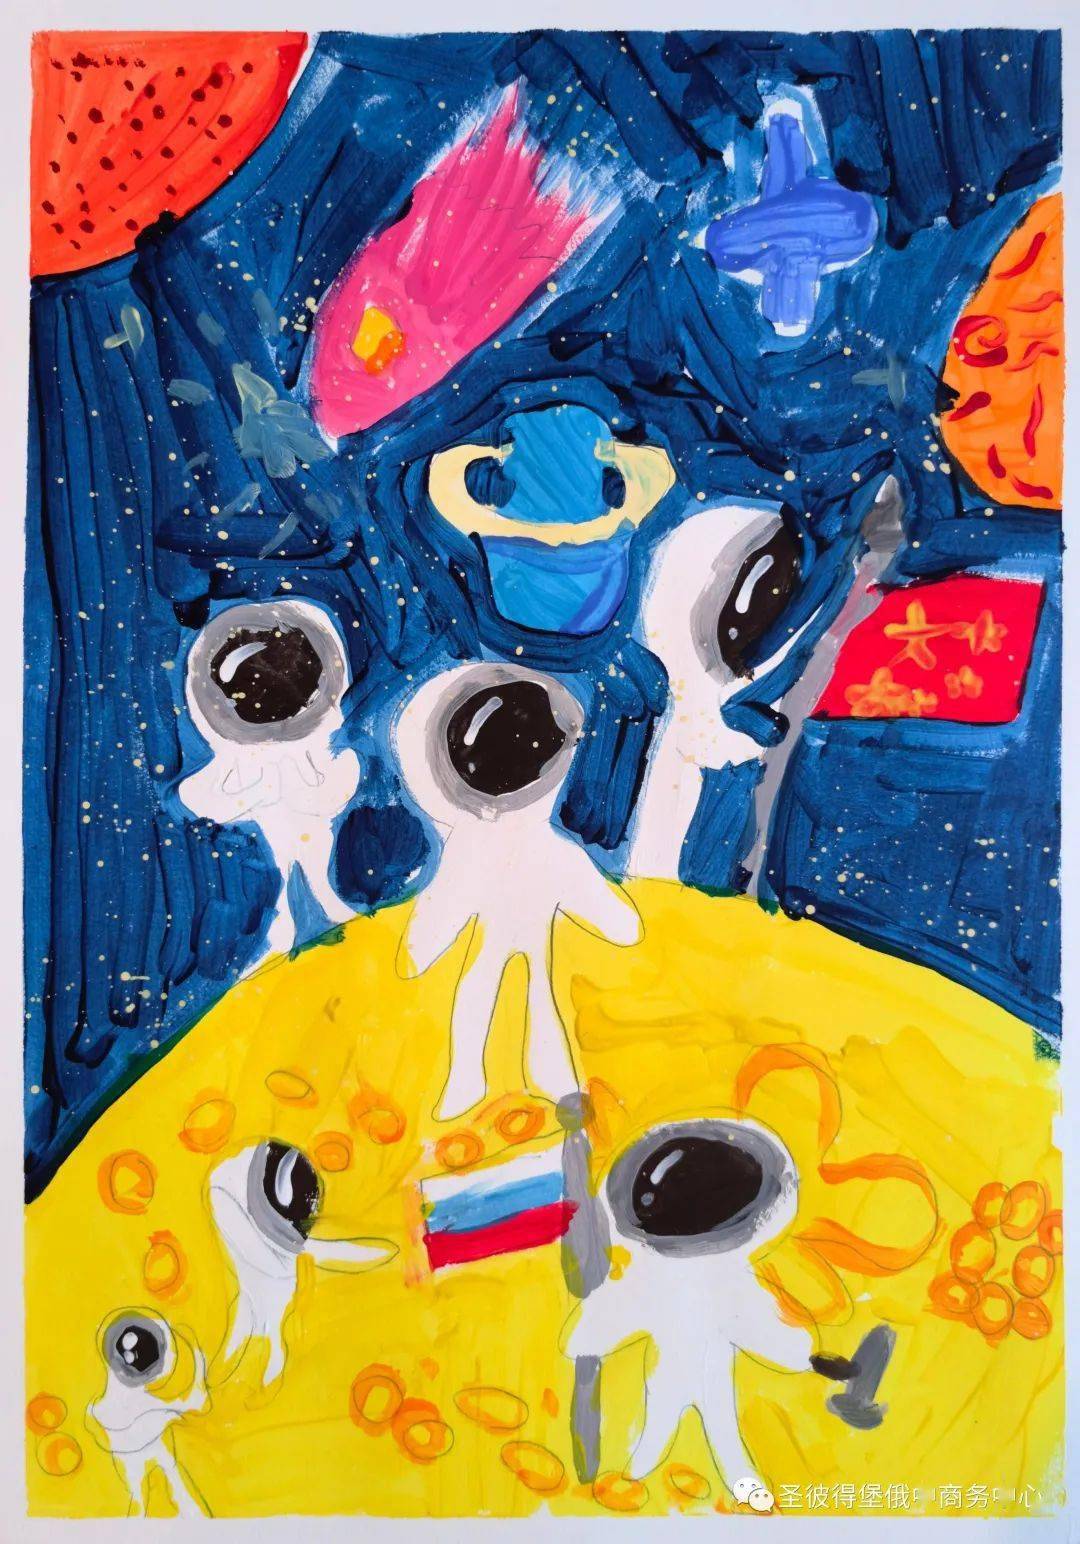 【图集】中俄"童心筑梦 探索太空"儿童创意画优秀作品